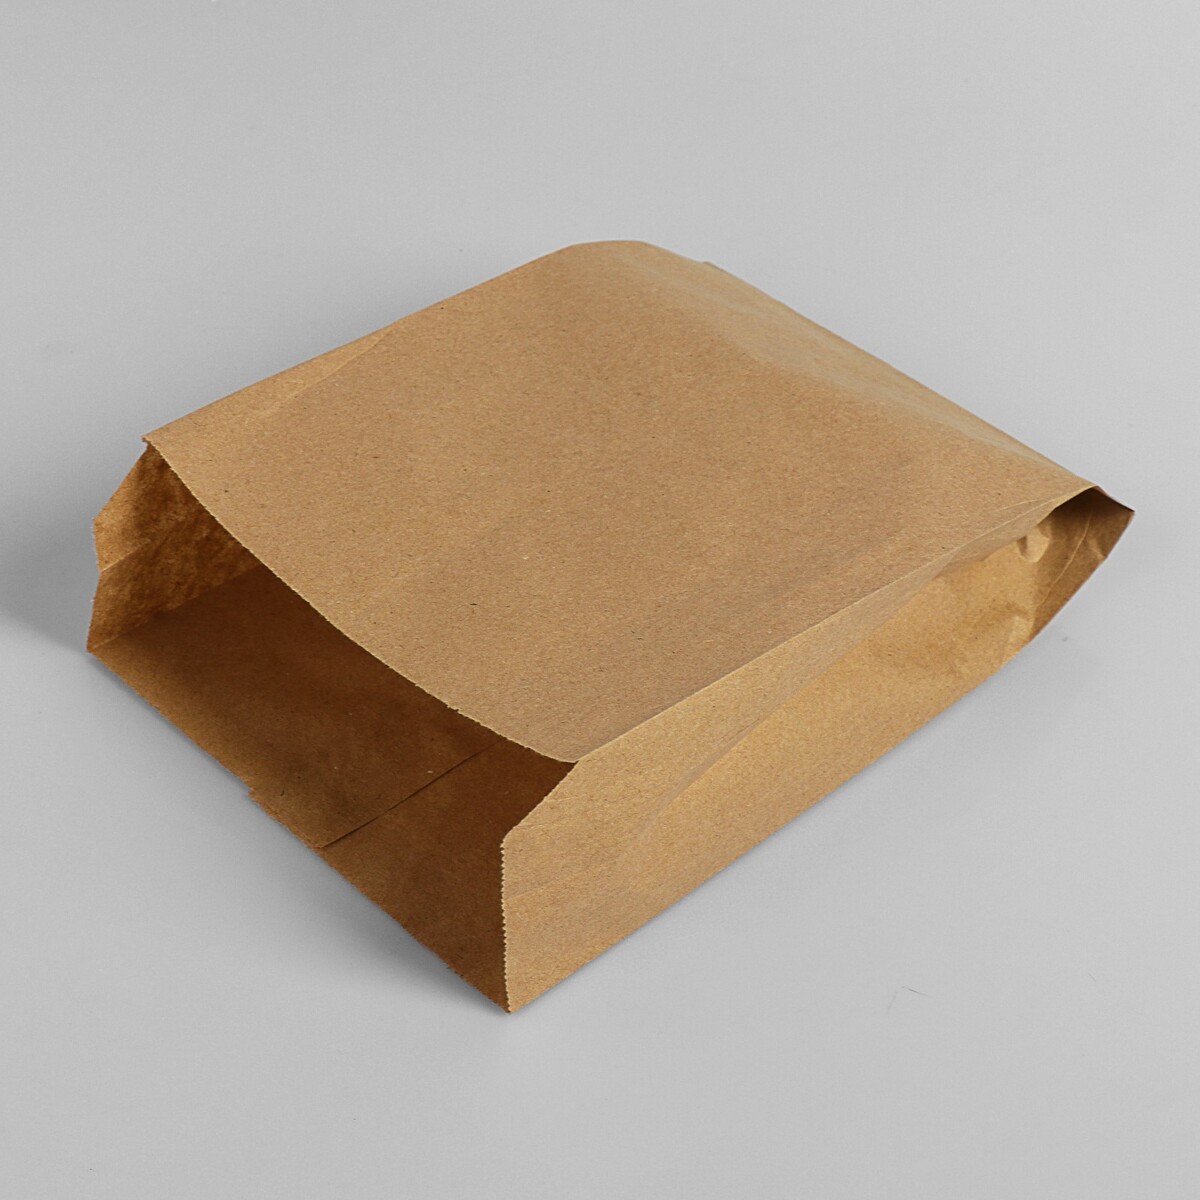 Пакет бумажный фасовочный, крафт, v-образное дно 25 х 17 х 7 см, набор 100 шт пакет феникс бумажный компас 33 45 7 10 2см 40863